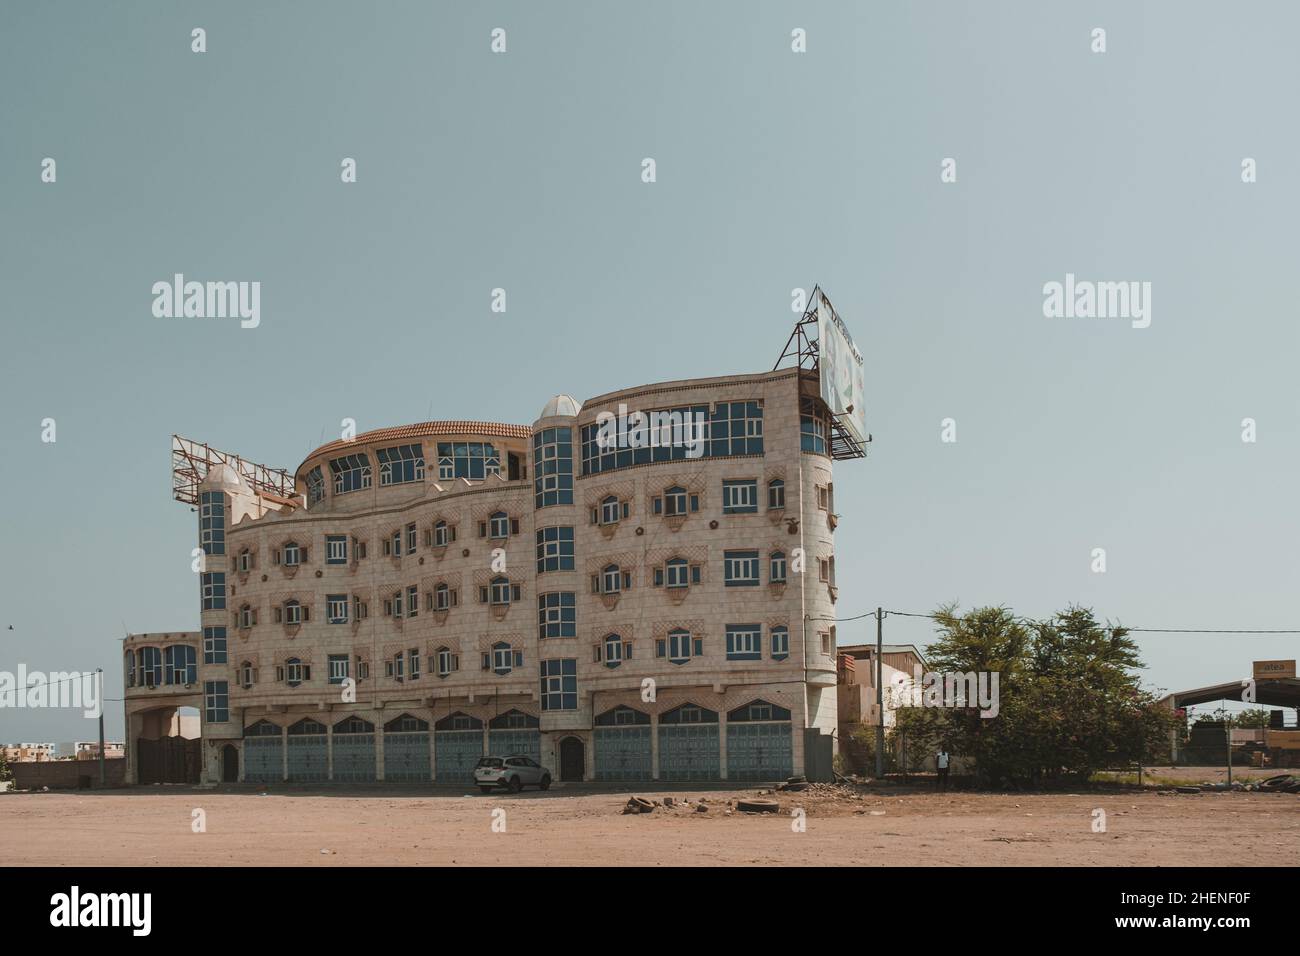 Djibouti, Djibouti - May 21, 2021: A building of bank in Djibouti. Salaam Bank buildings. Editorial shot in Djibouti. Stock Photo